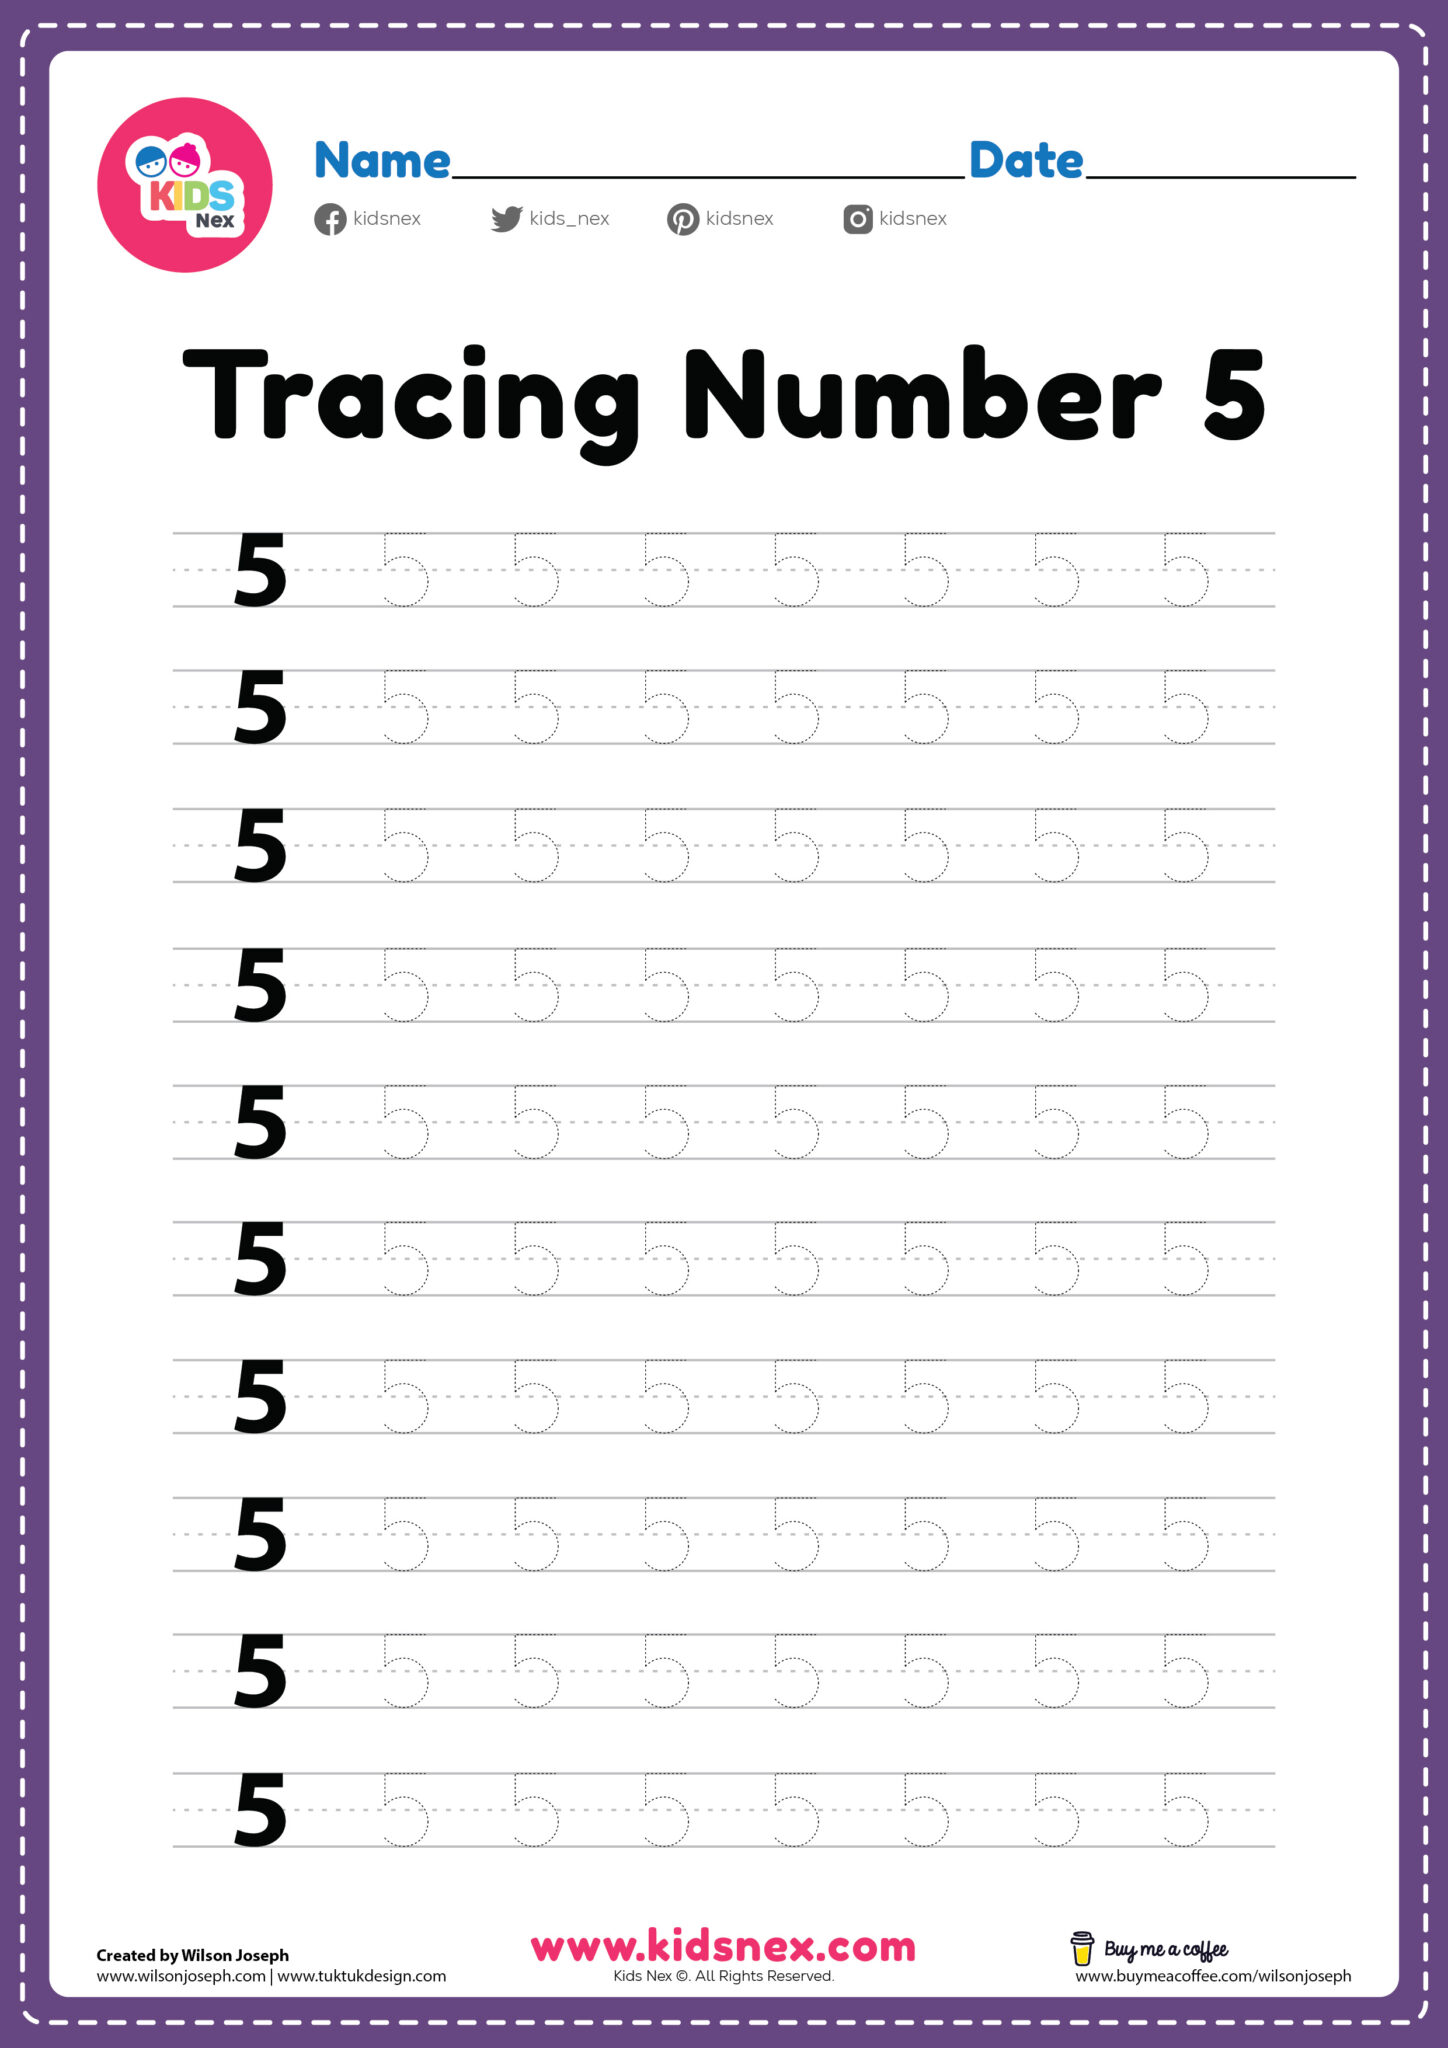 tracing-number-5-worksheet-kindergarten-free-printable-pdf